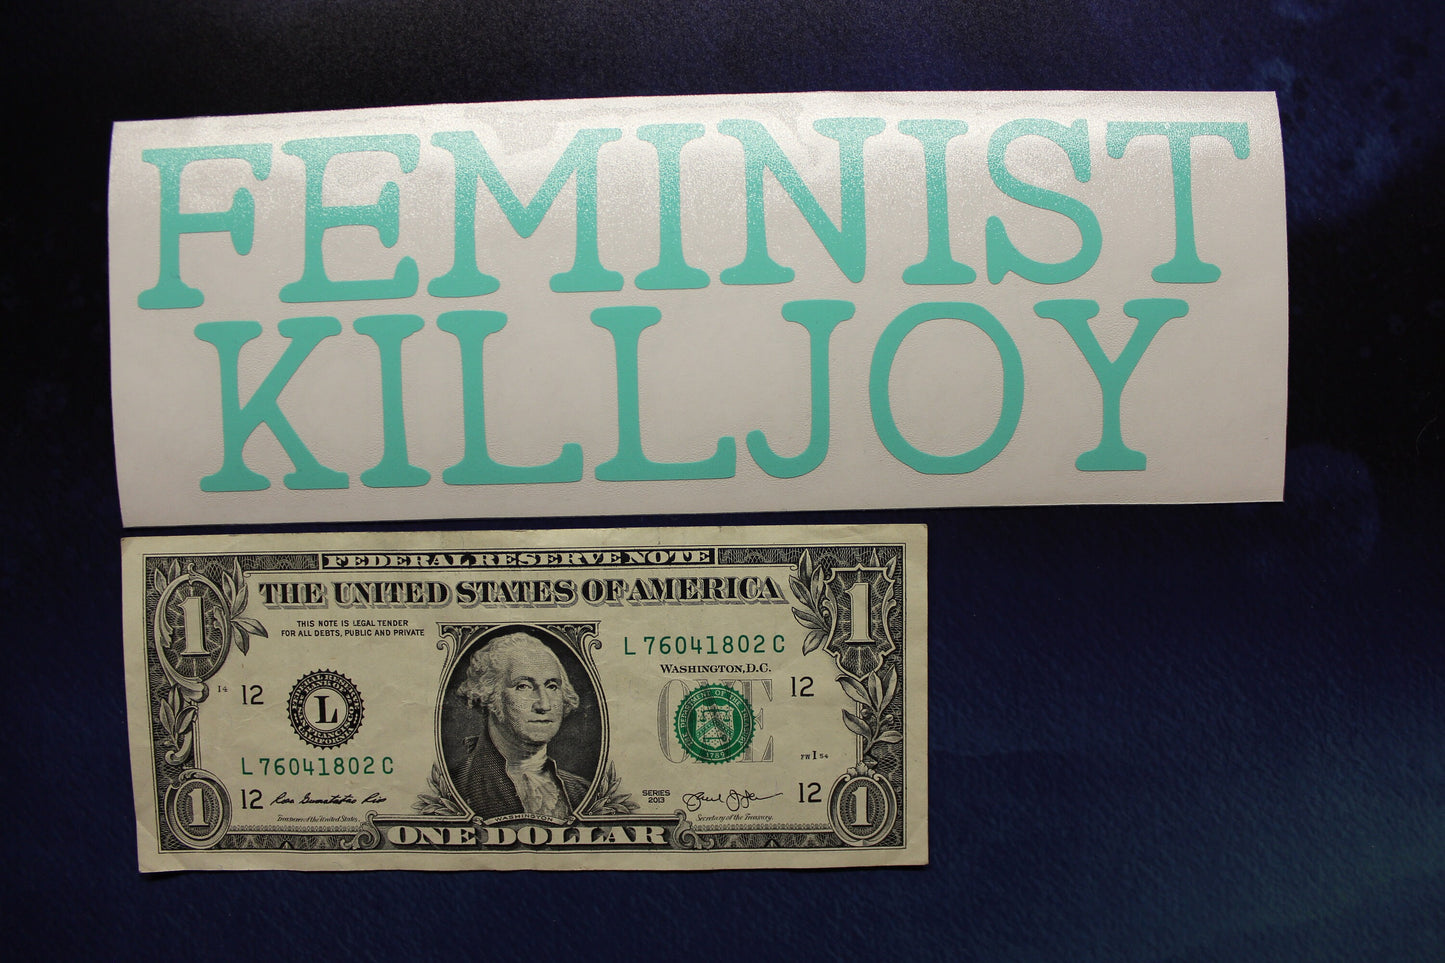 Feminist Killjoy Vinyl Decal